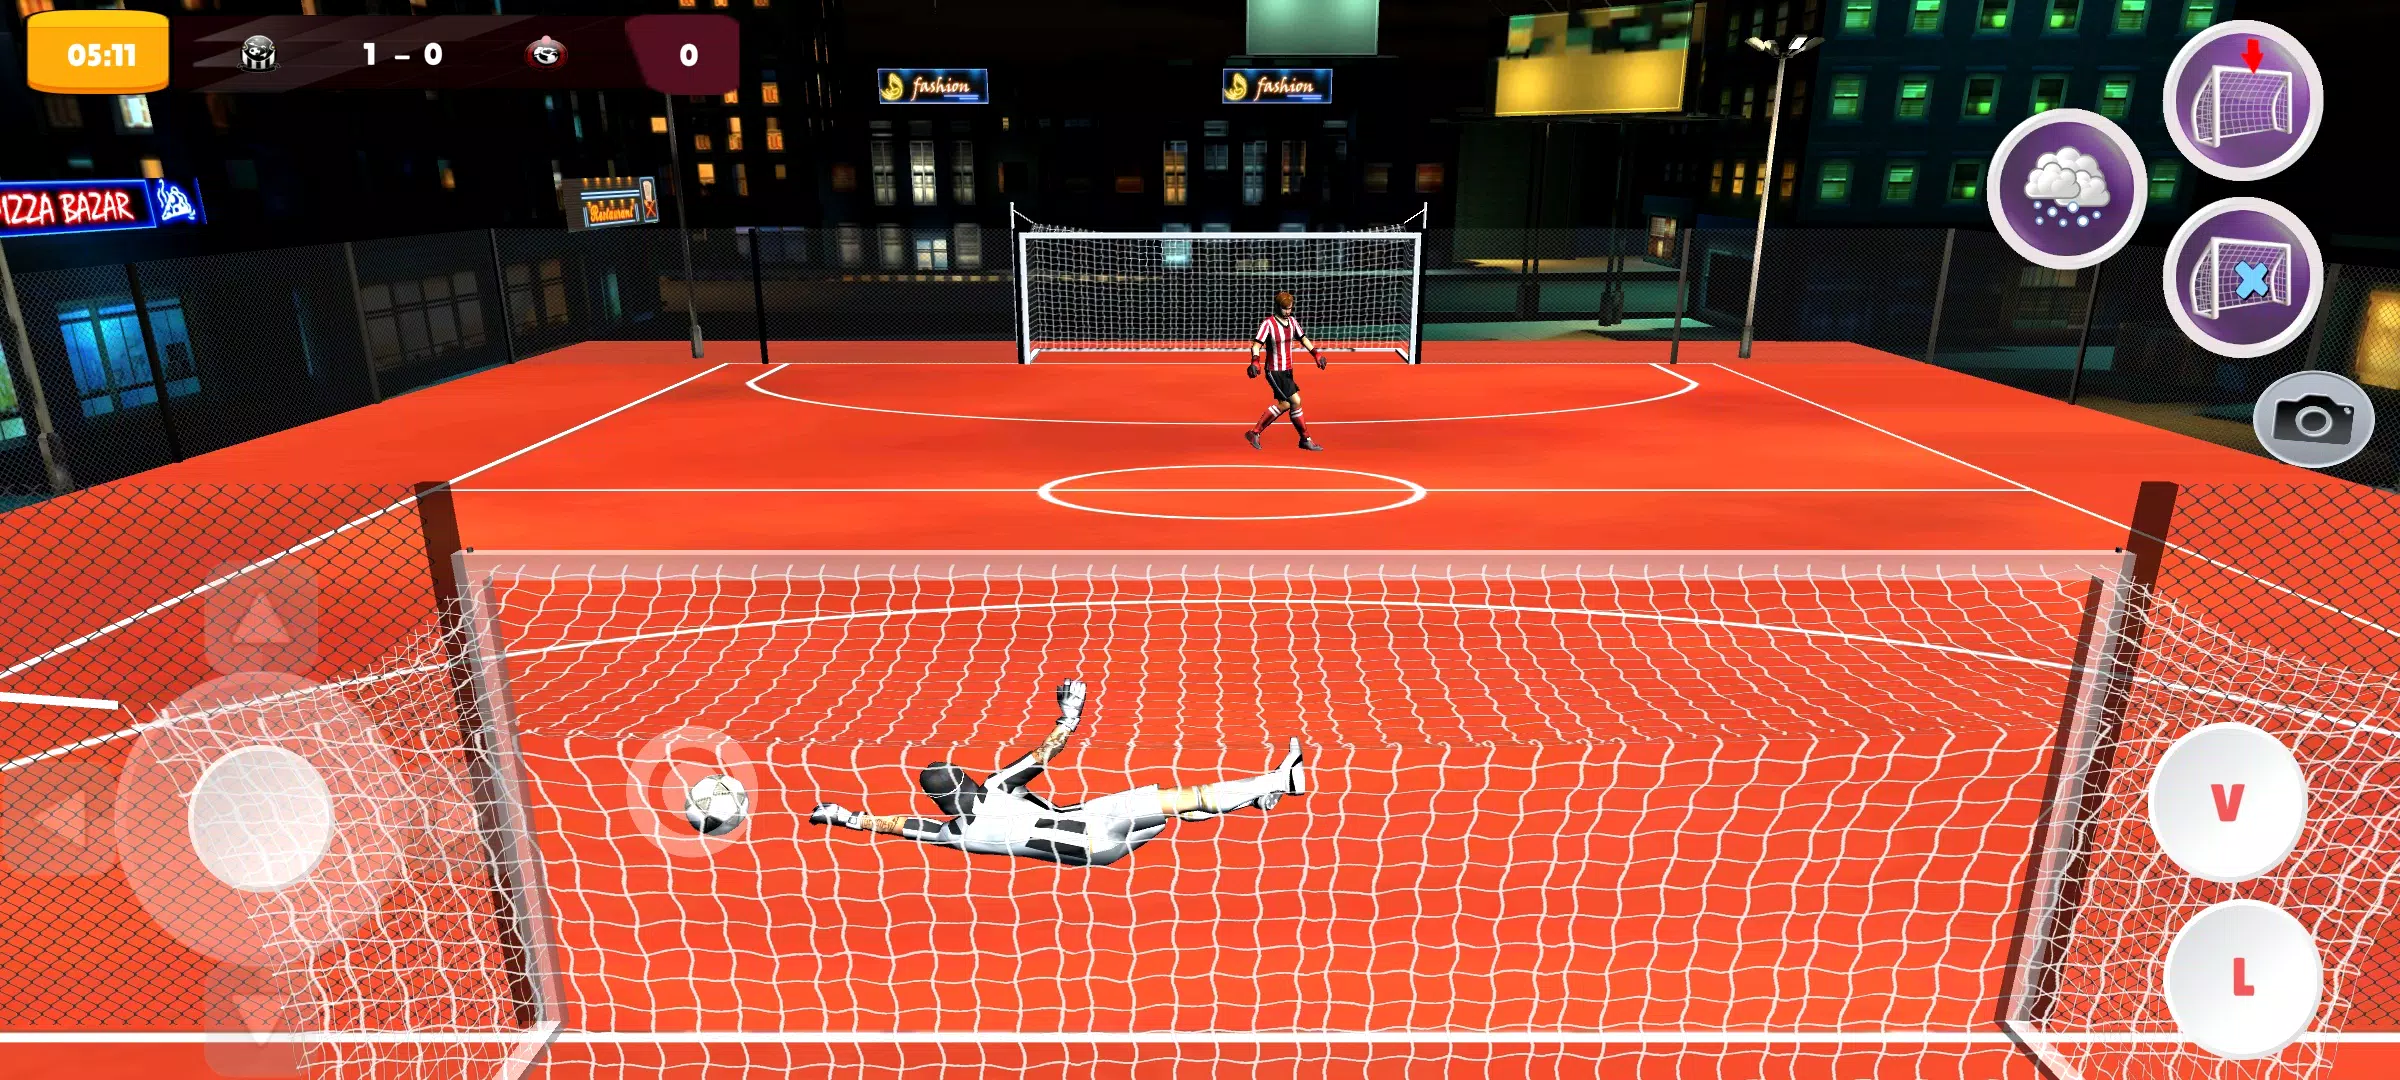 Download do APK de Gol a Gol - Futebol Online para Android